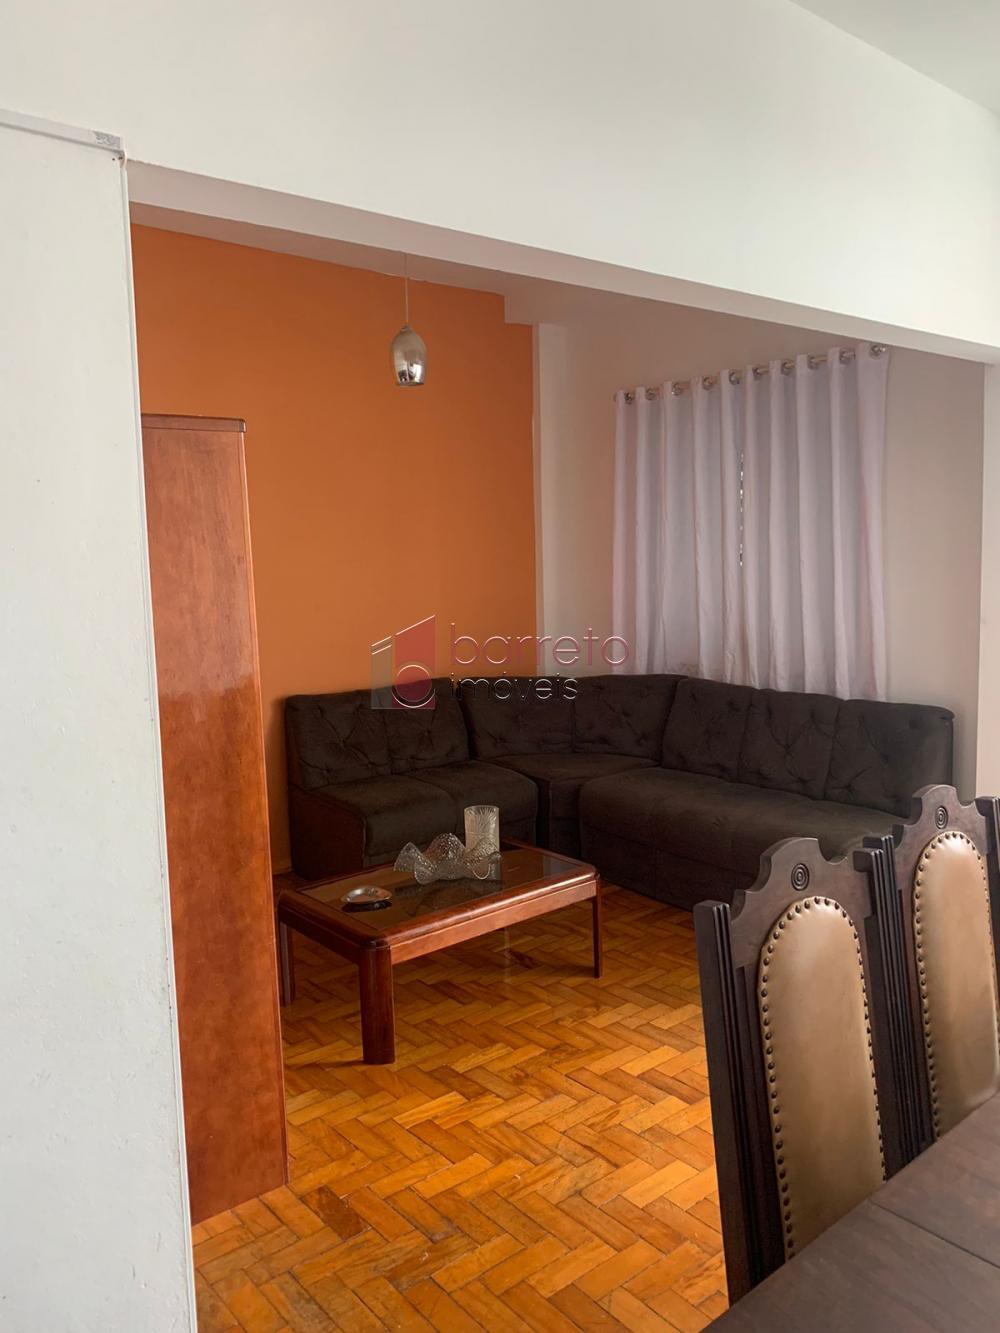 Alugar Apartamento / Padrão em Jundiaí R$ 2.500,00 - Foto 7